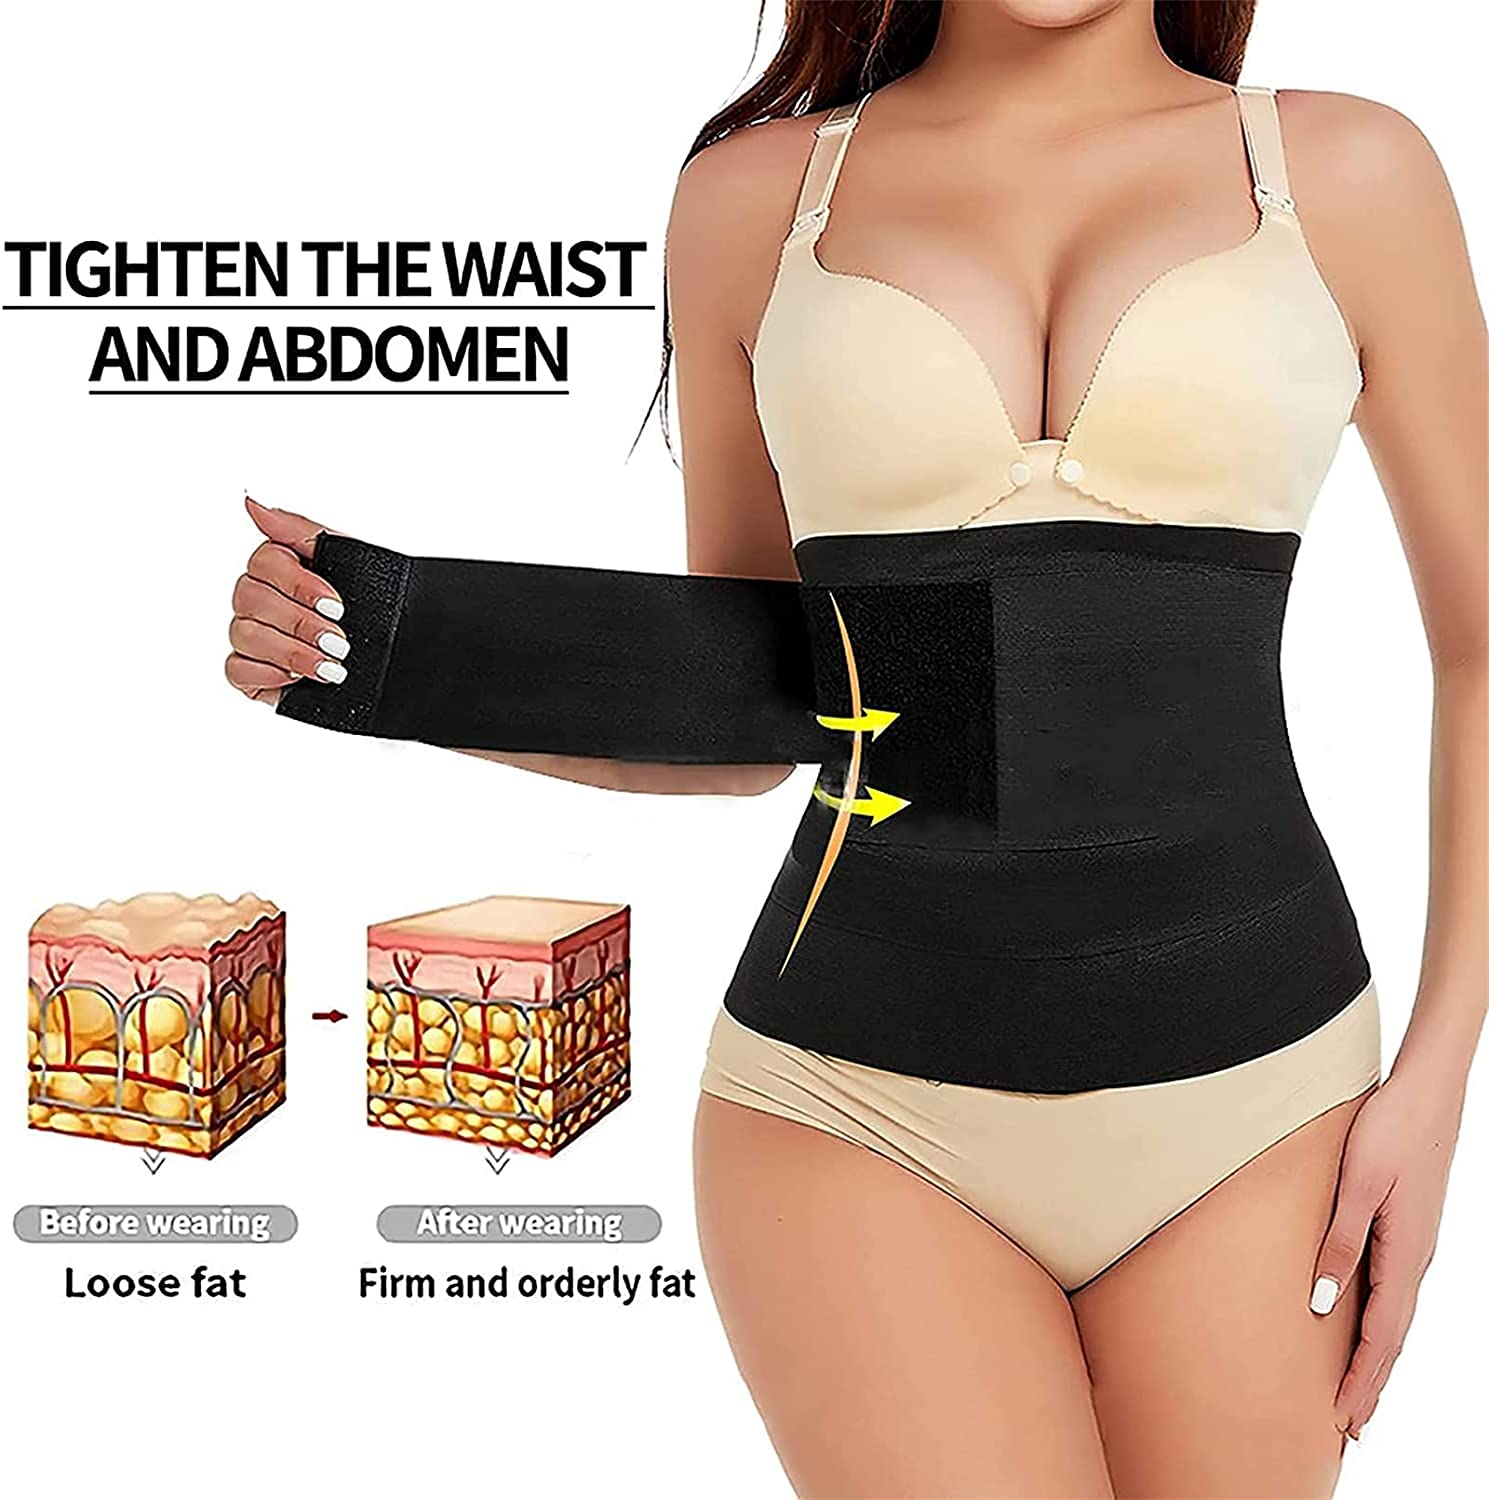 https://waistmeup.com.au/wp-content/uploads/2021/09/tummy-flattening-waist-wrapping-belt2.jpg